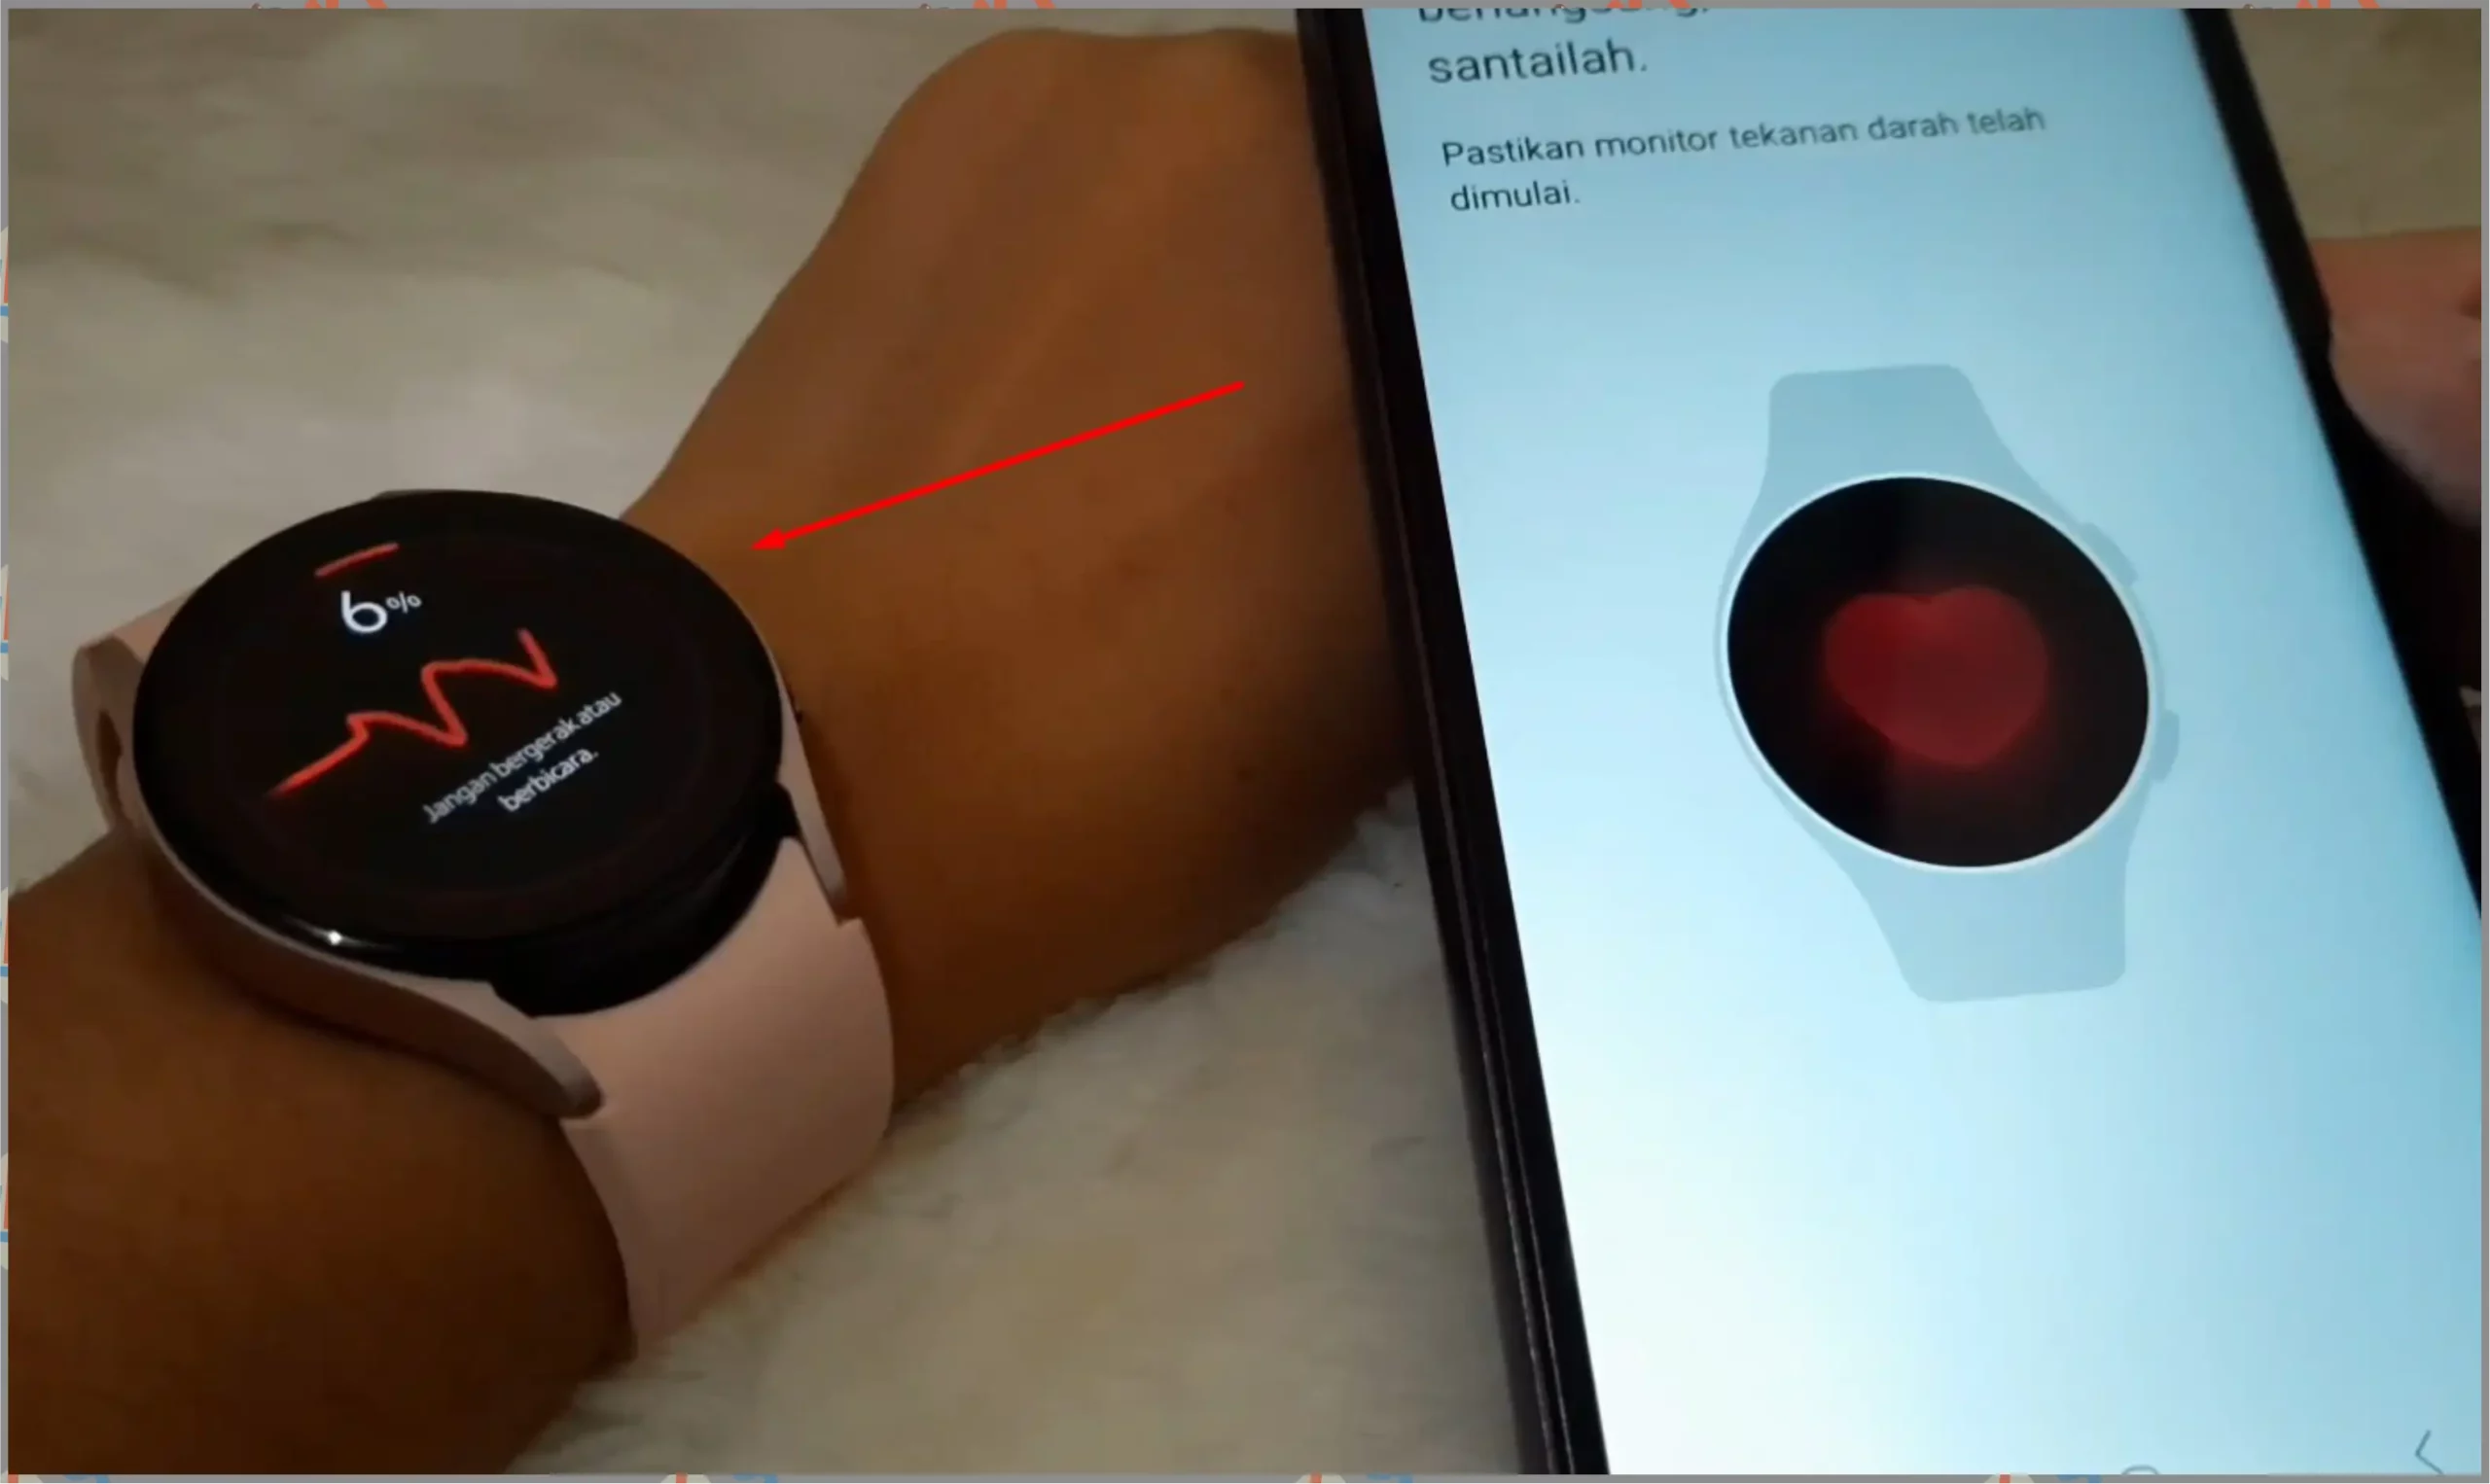 7 Deteksi Detak Jantung - Cara Mengukur Tensi dengan Samsung Galaxy Watch